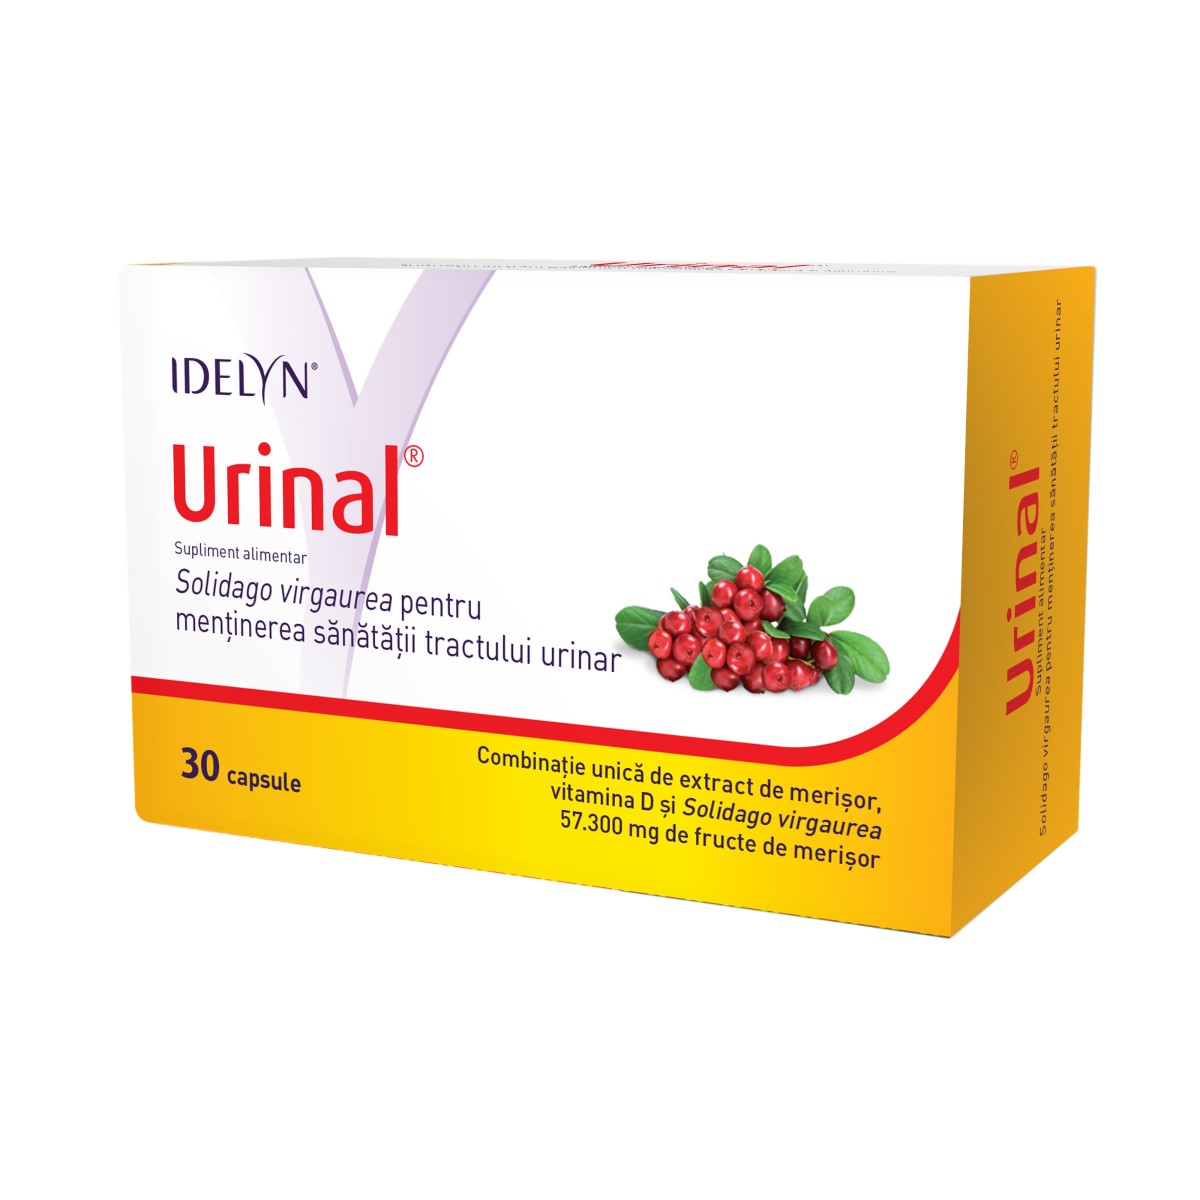 Dezinfectante urinare - Urinal, 30 capsule, Walmark, sinapis.ro